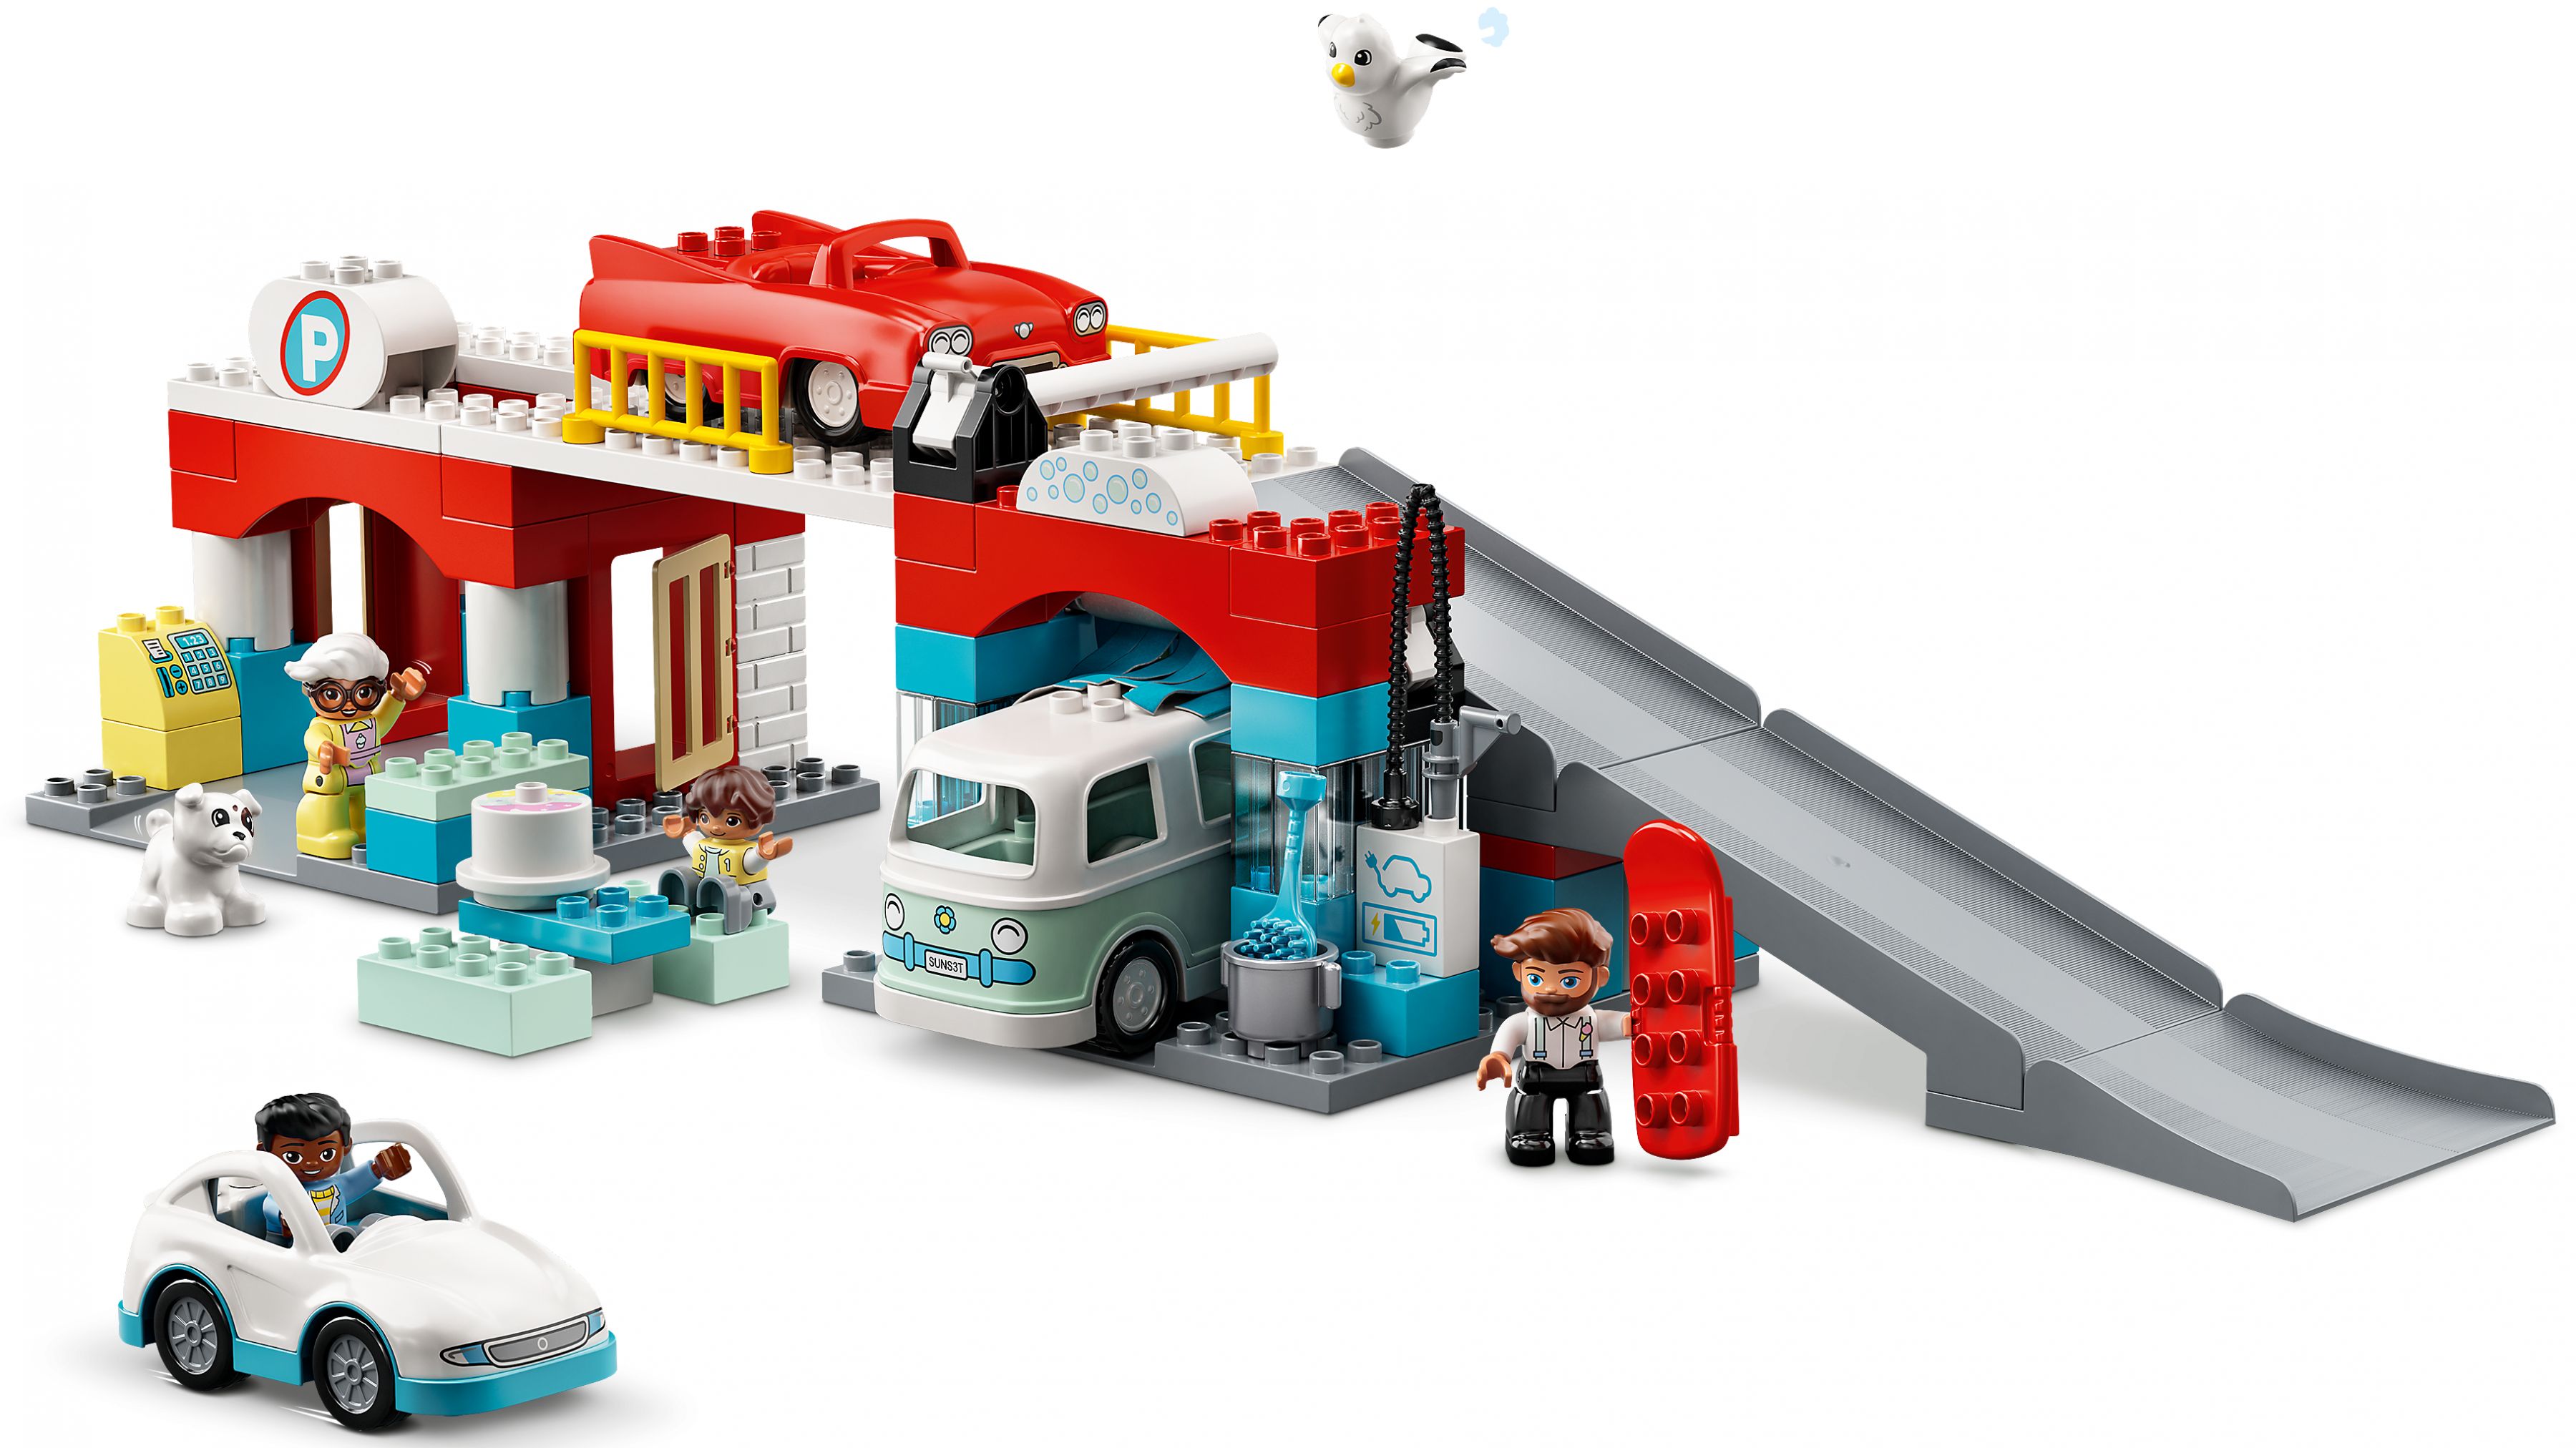 LEGO Duplo 10948 Parkhaus mit Autowaschanlage LEGO_10948_web_sec04_nobg.jpg